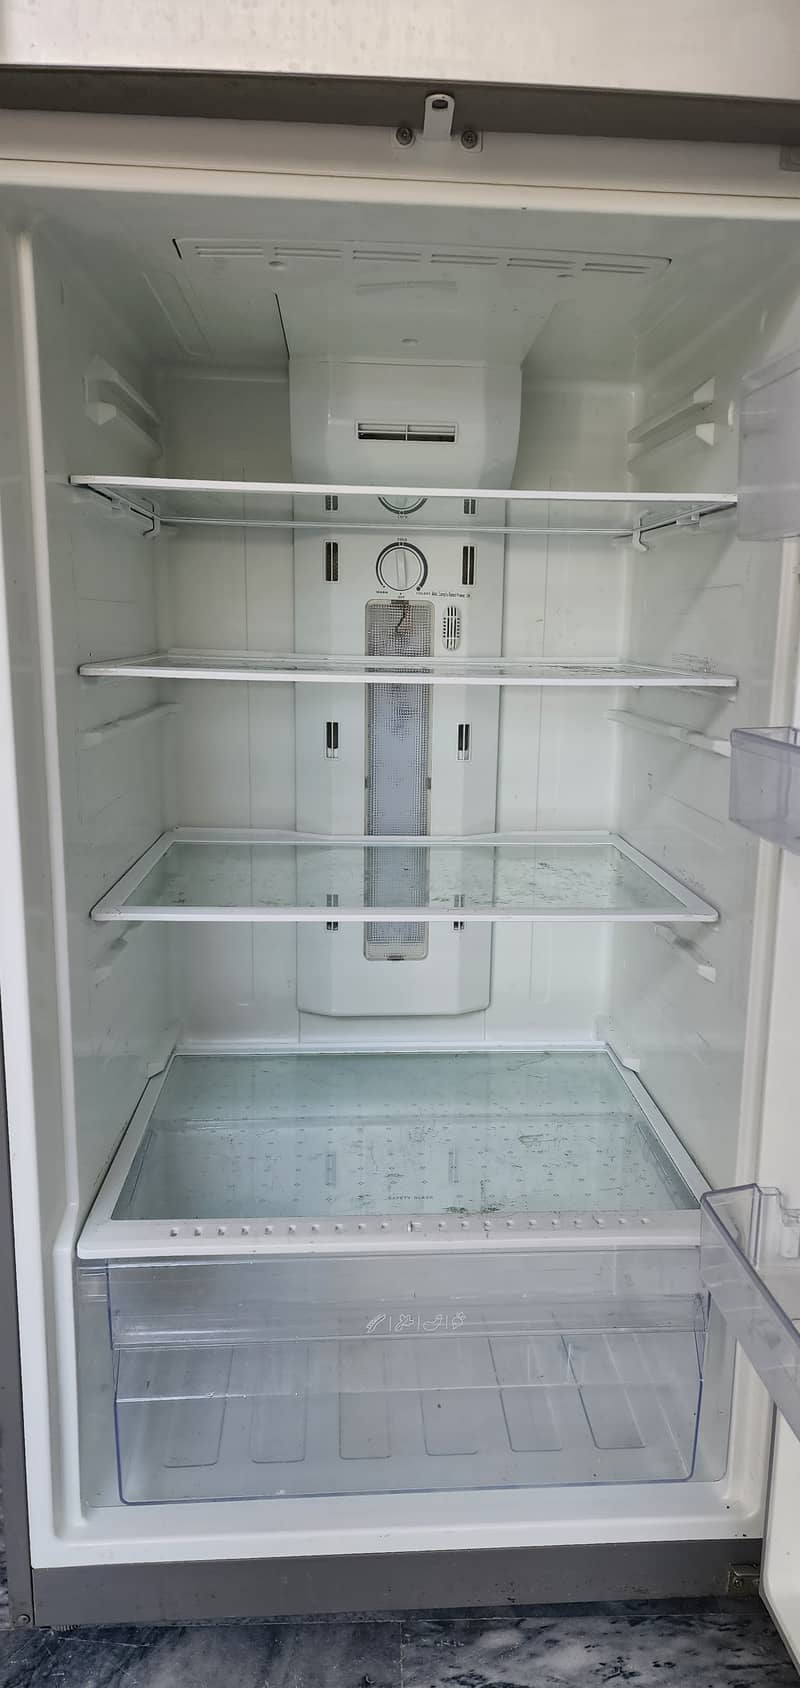 Refrigerator 12